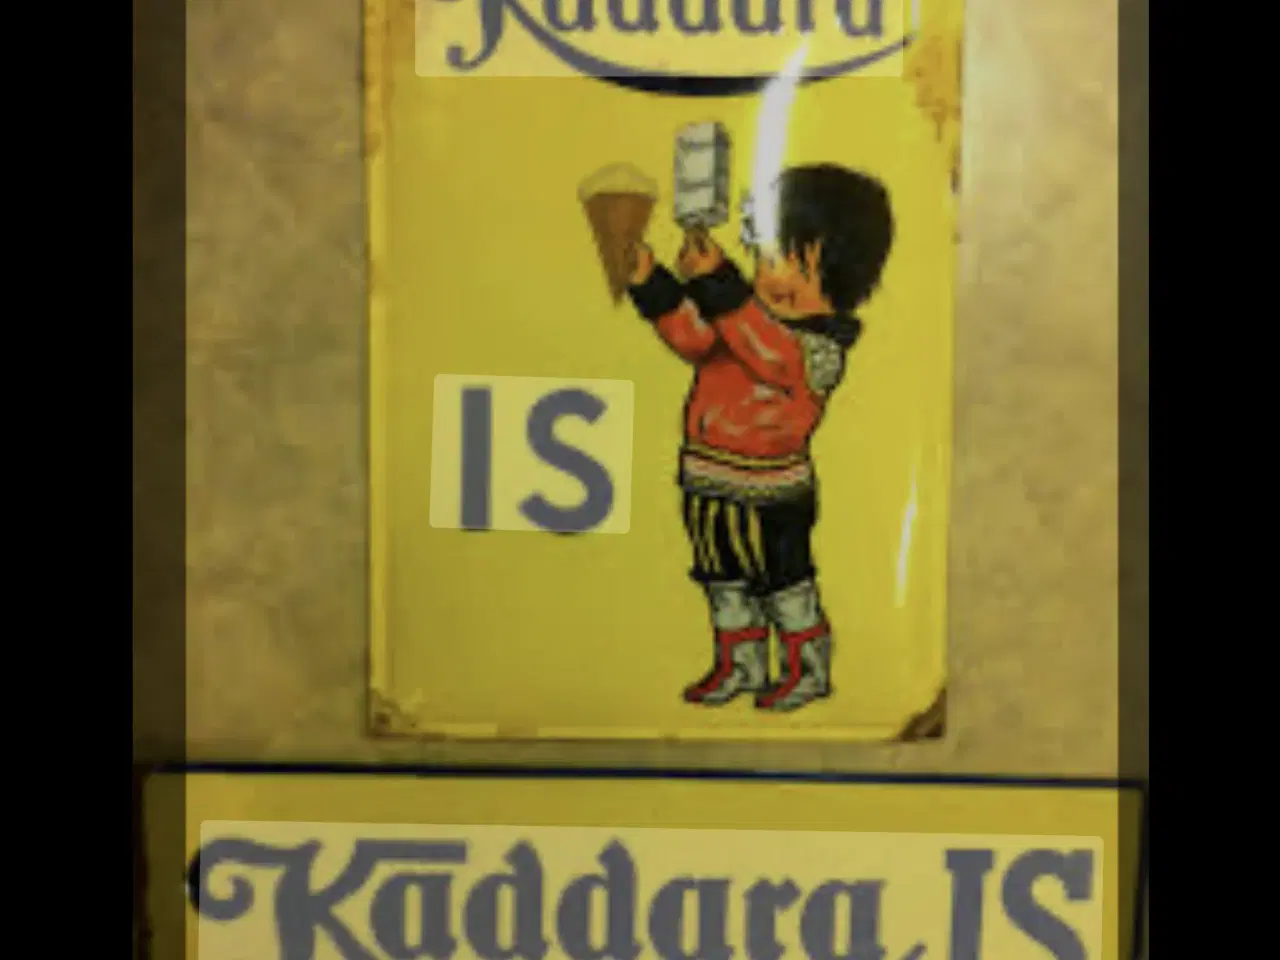 Billede 1 - Kaddara is skilt